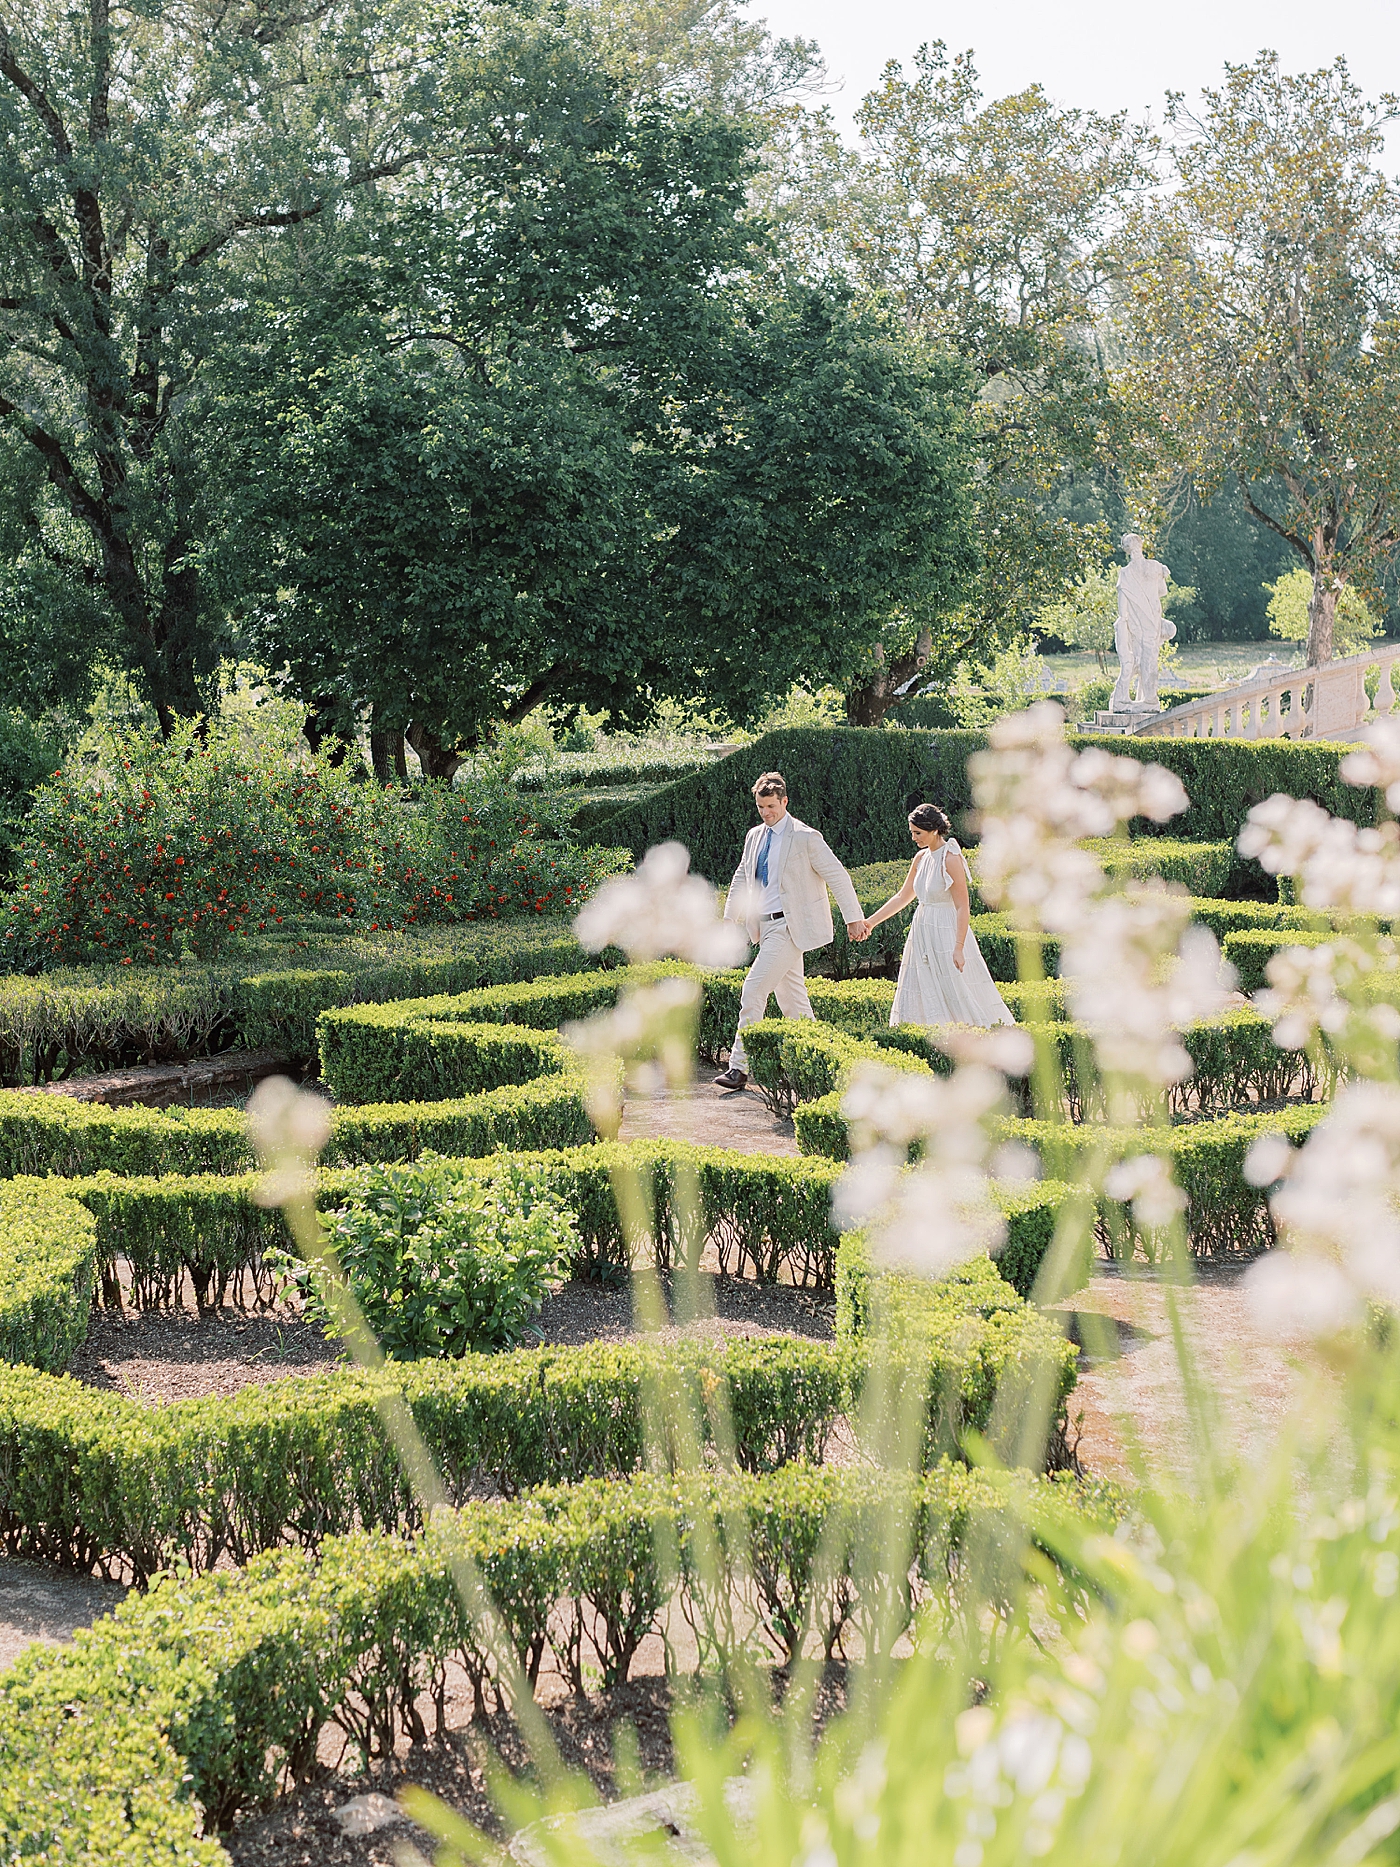 Couple walking hand in hand through a garden at Palacio de Queluz | Photo by Diane Sotero 